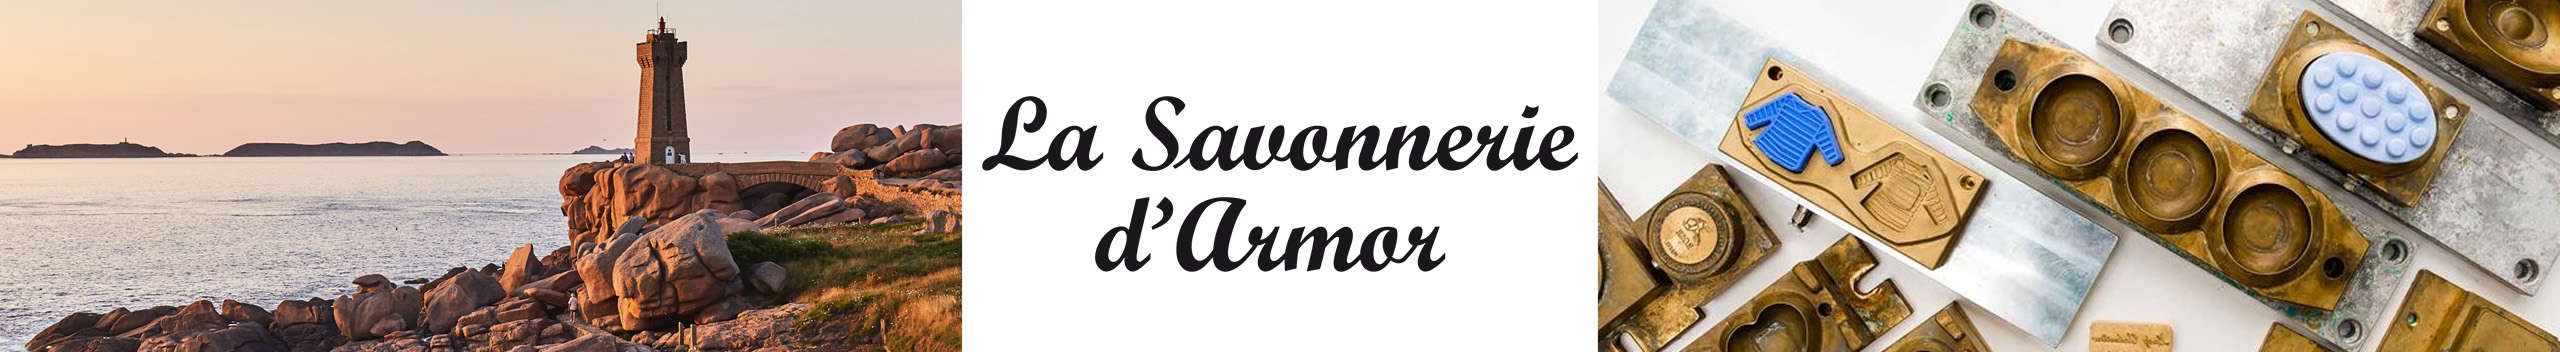 savonnerie d'armor bretagne savon saponification